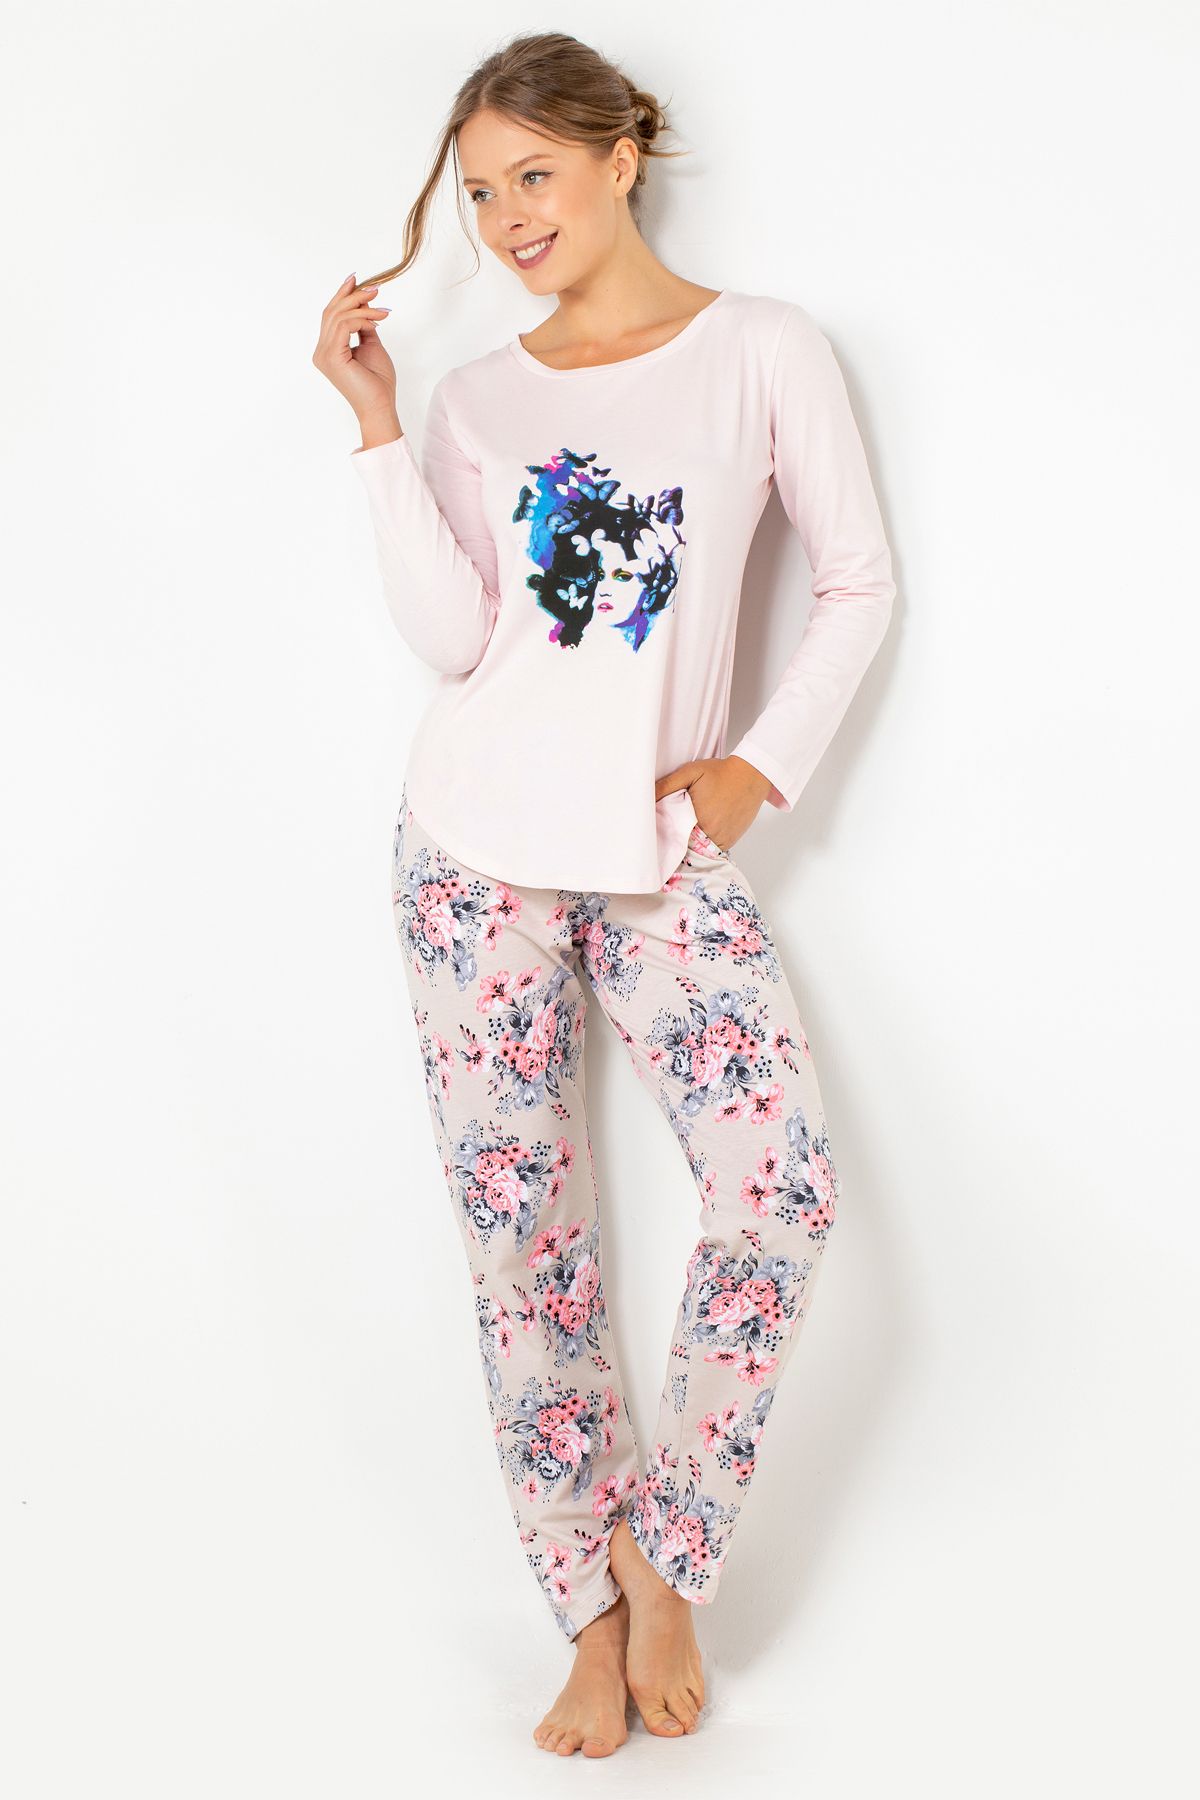 DoReMi Soft Style  Pijama Takımı